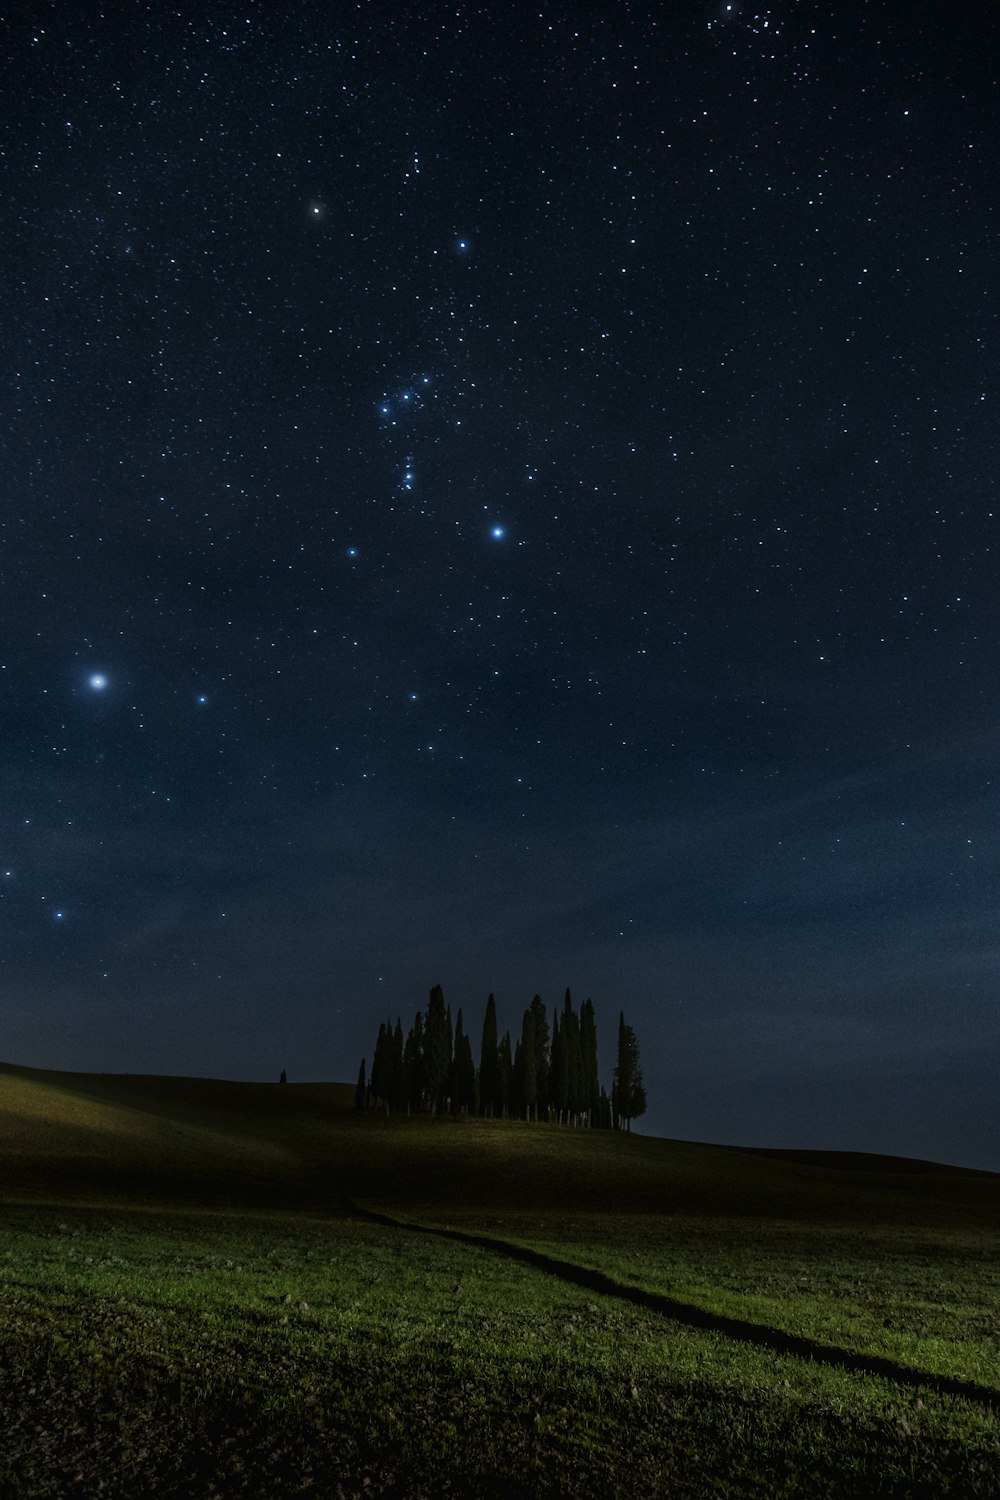 Un campo con árboles y estrellas en el cielo